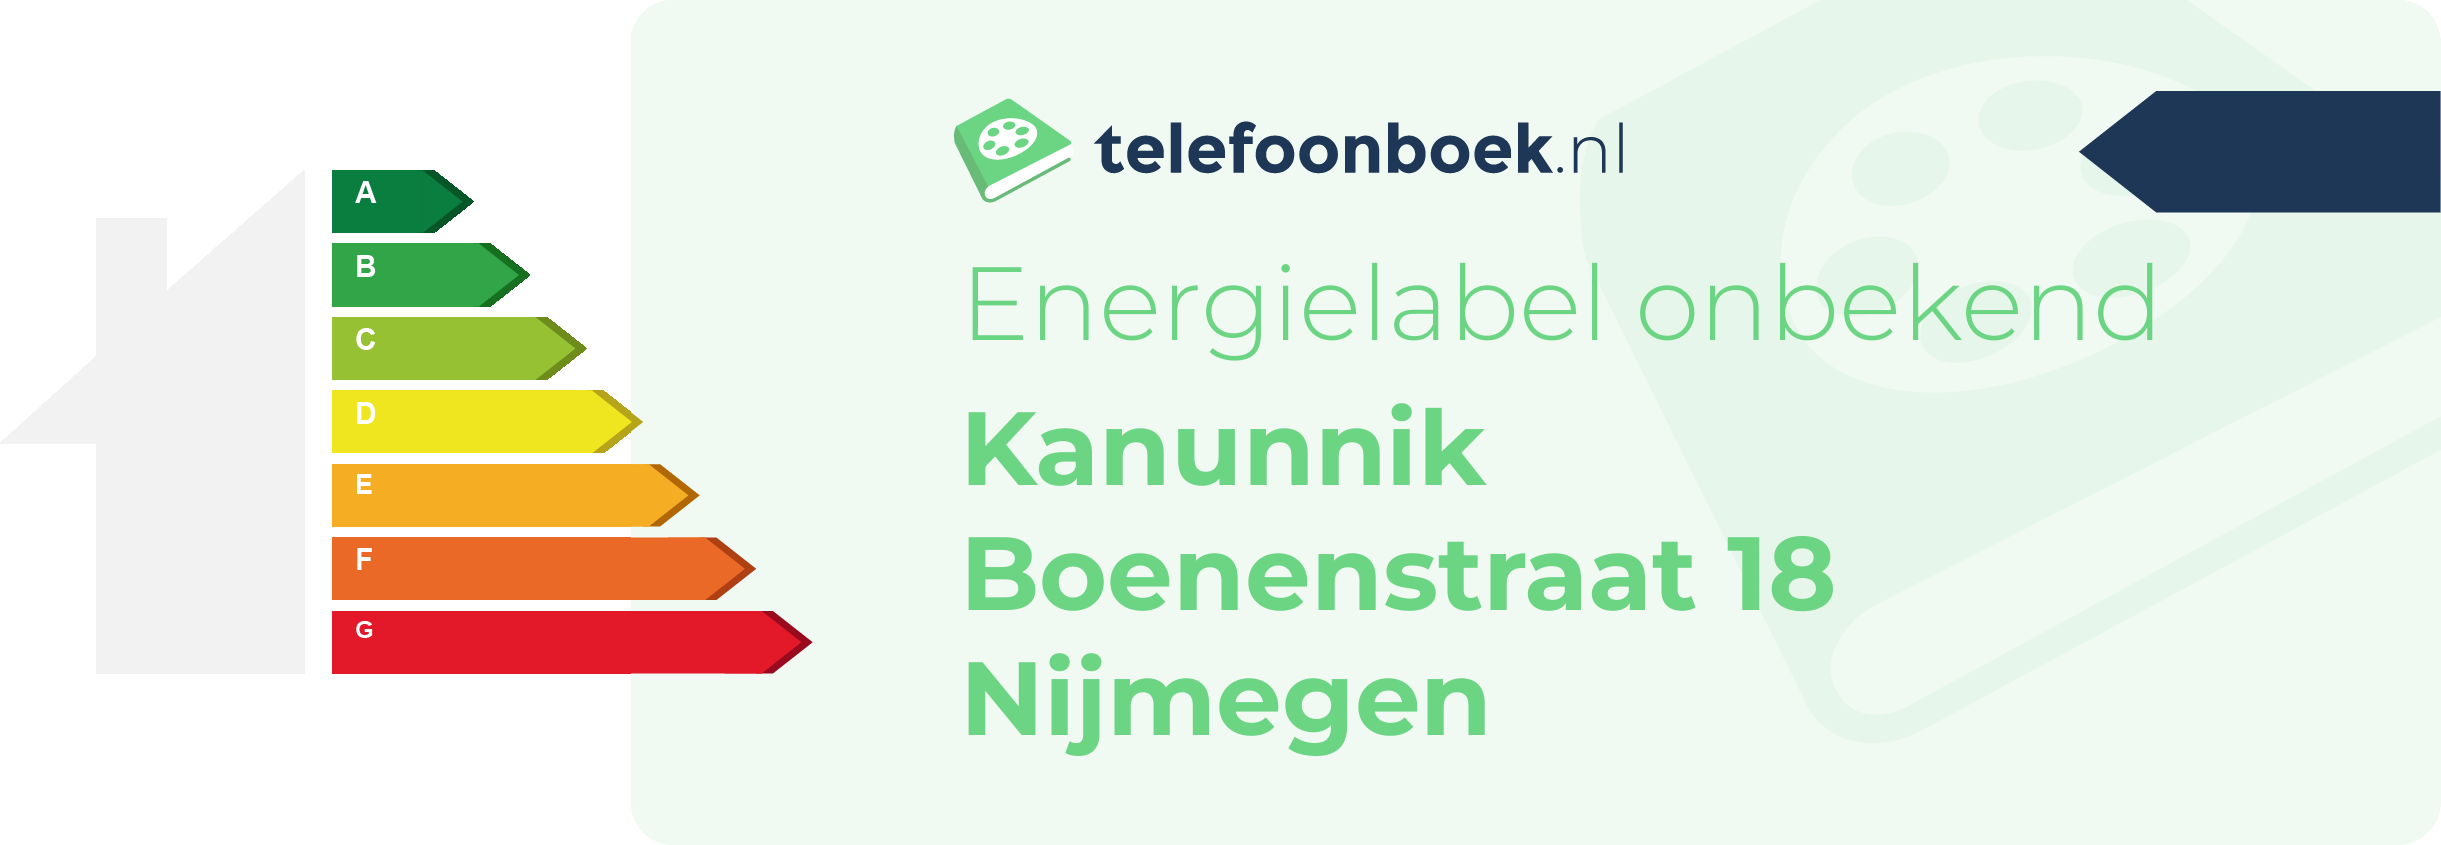 Energielabel Kanunnik Boenenstraat 18 Nijmegen